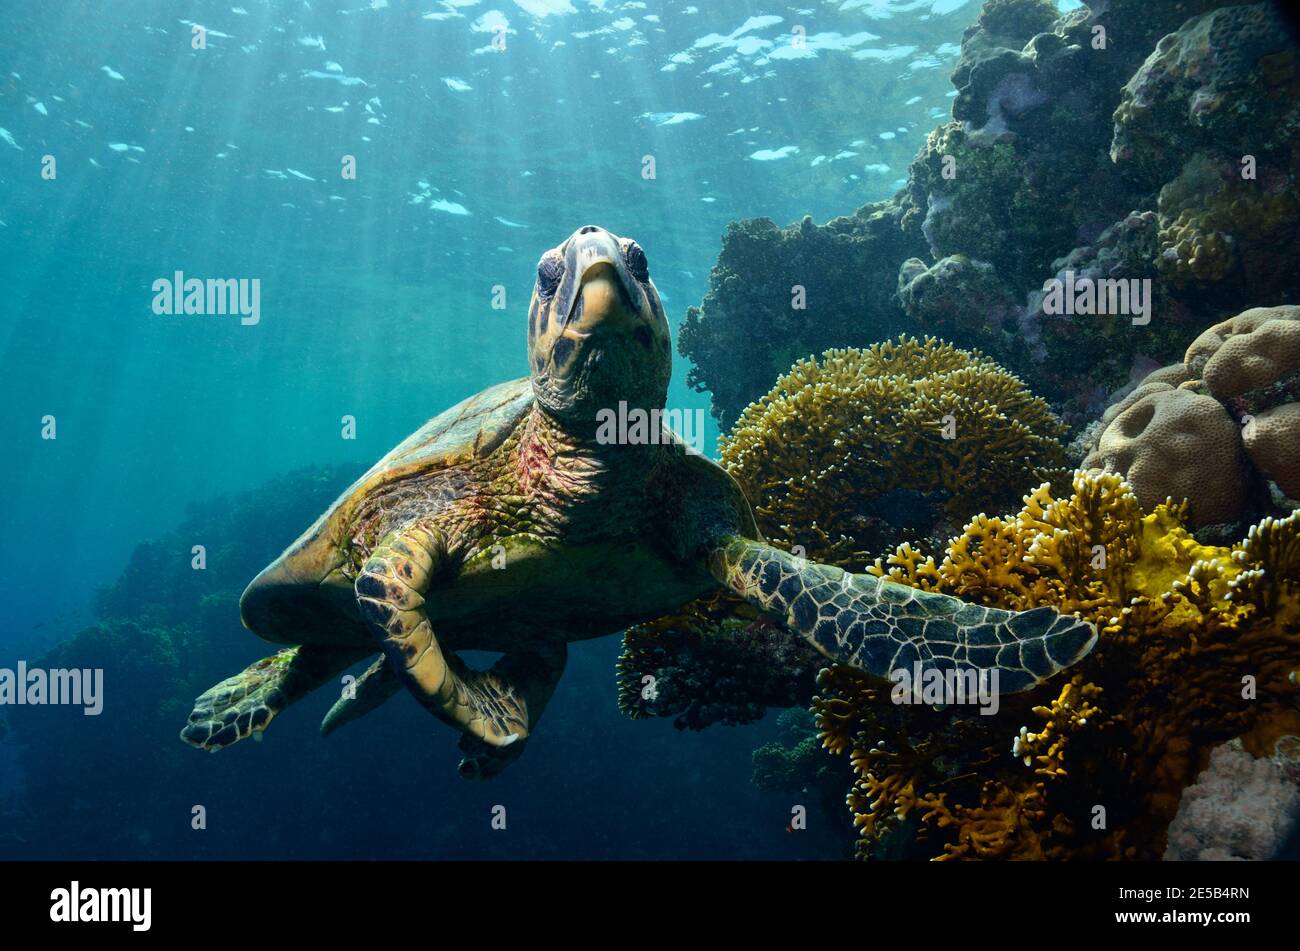 Eretmochelys imbricata, hawksbill sea turtle, Echte Karettschildkröte, Coraya Beach, Rotes Meer, Ägypten, Red Sea, Egypt Stock Photo